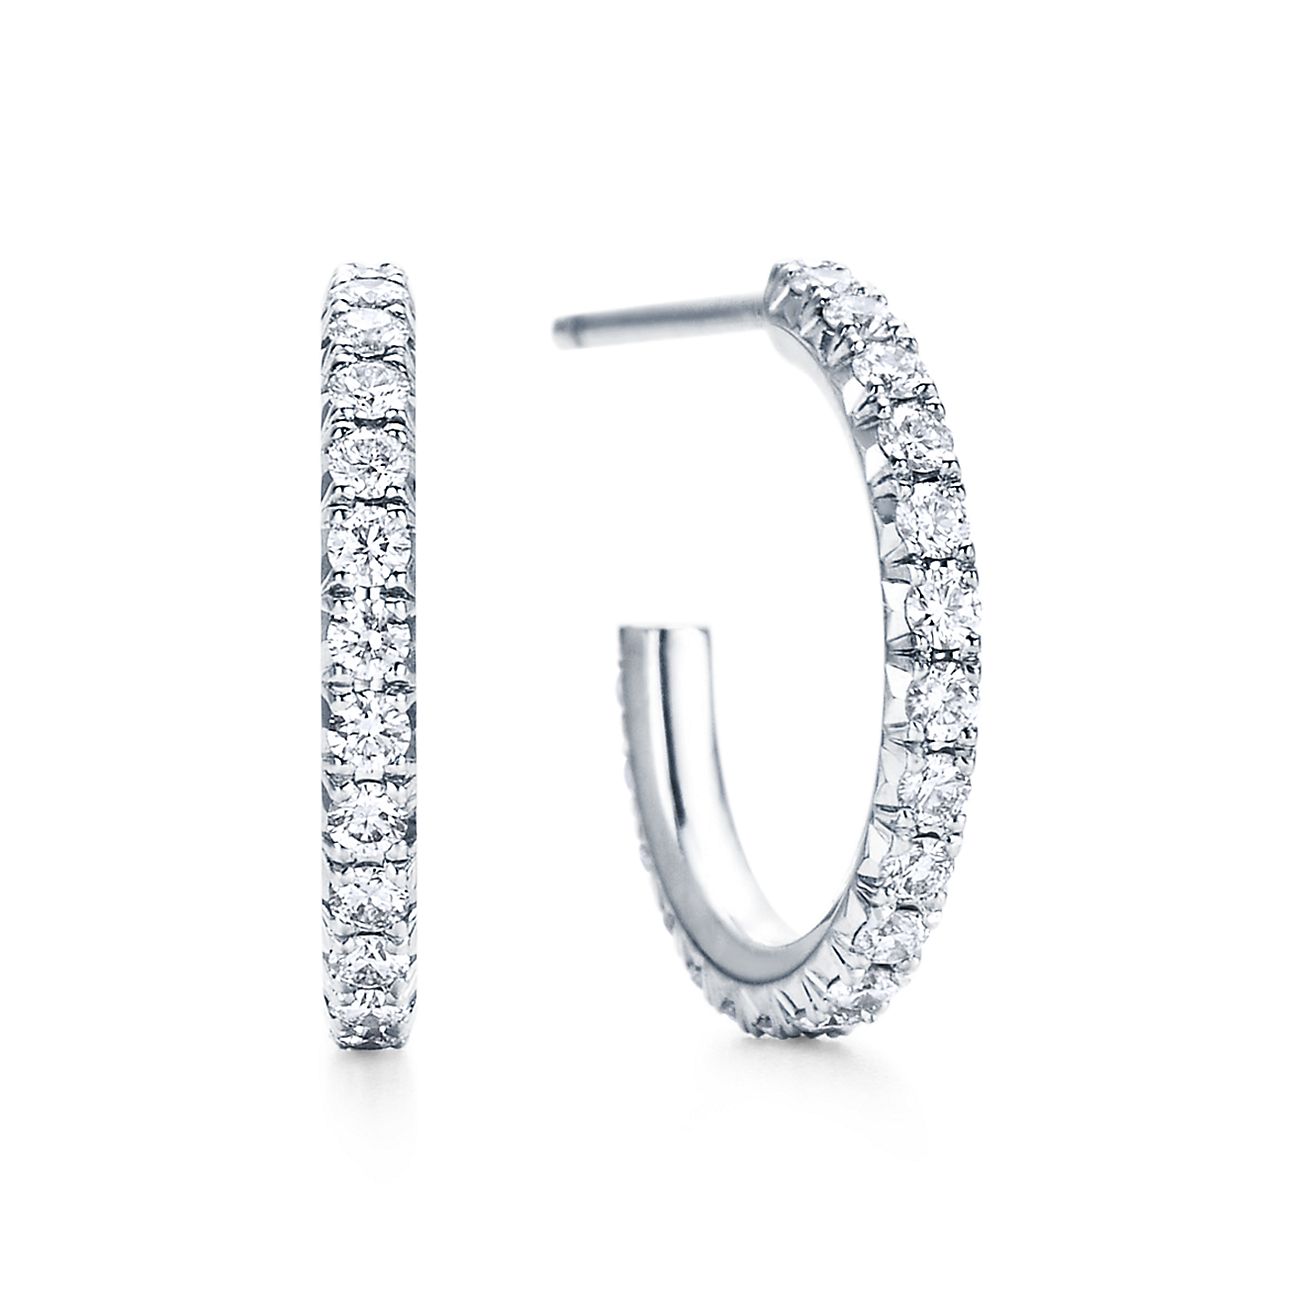 Tiffany Metro hoop earrings in 18k 